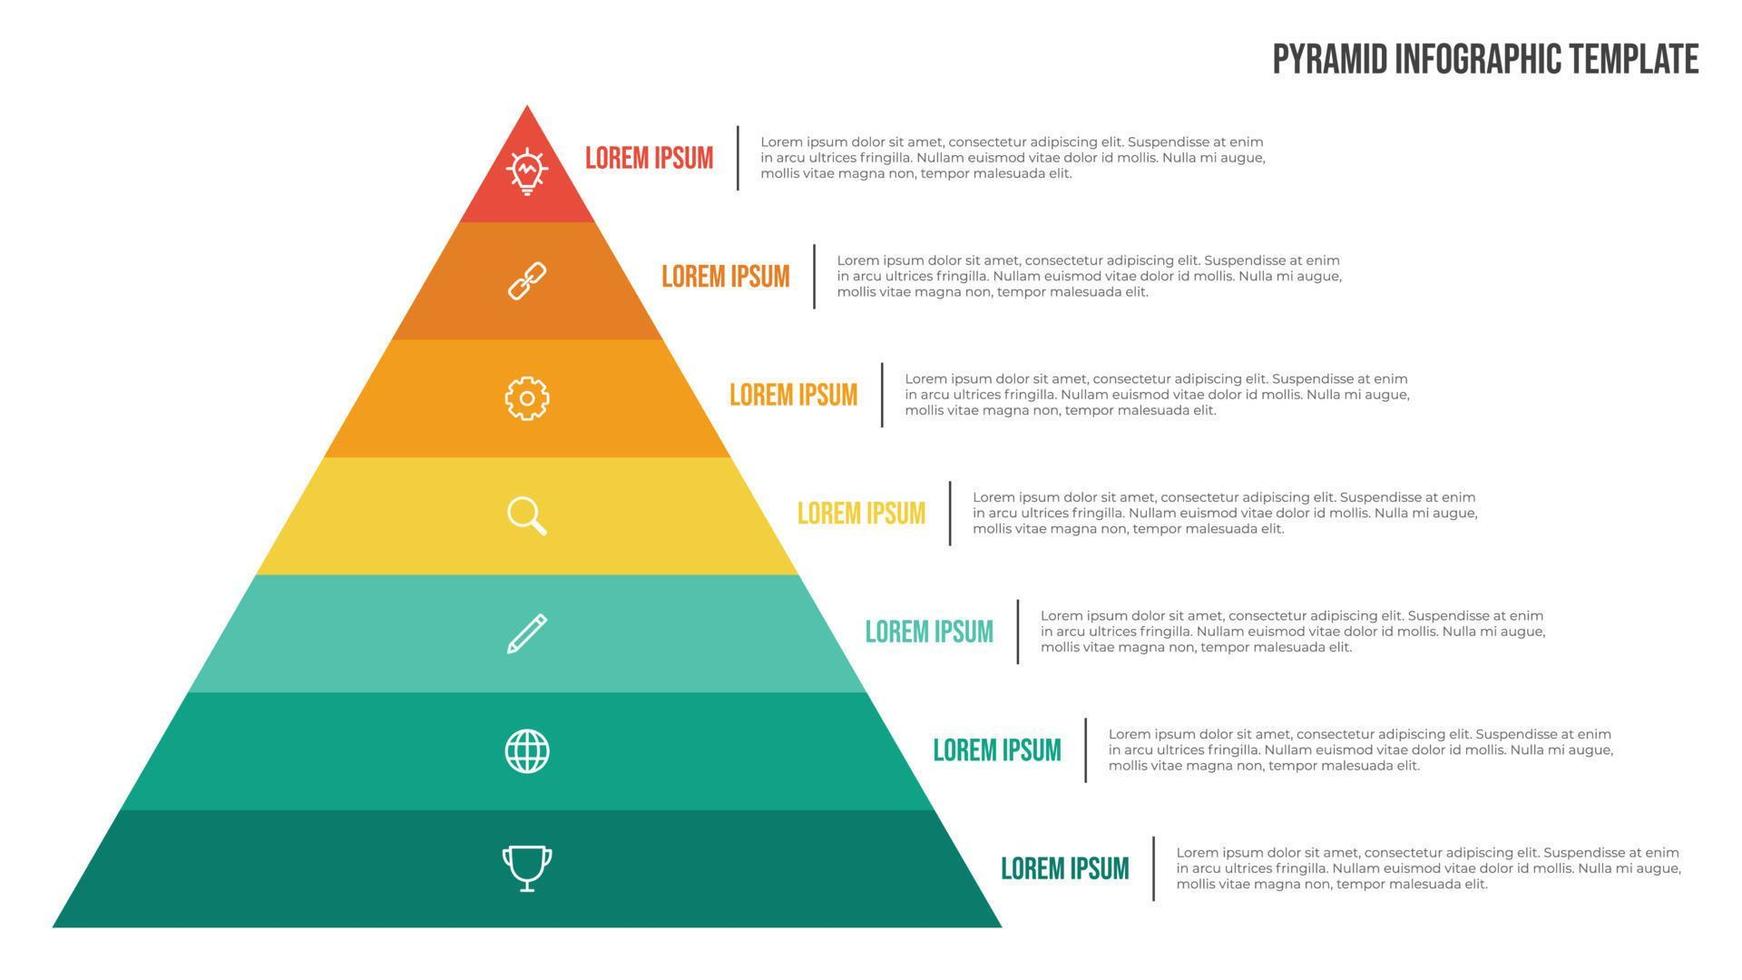 vetor de modelo infográfico de lista de pirâmide com 7 pontos e ícones. use para mostrar relacionamentos proporcionais, interconectados ou hierárquicos. use para slide de apresentação, banner, brochura, panfleto.